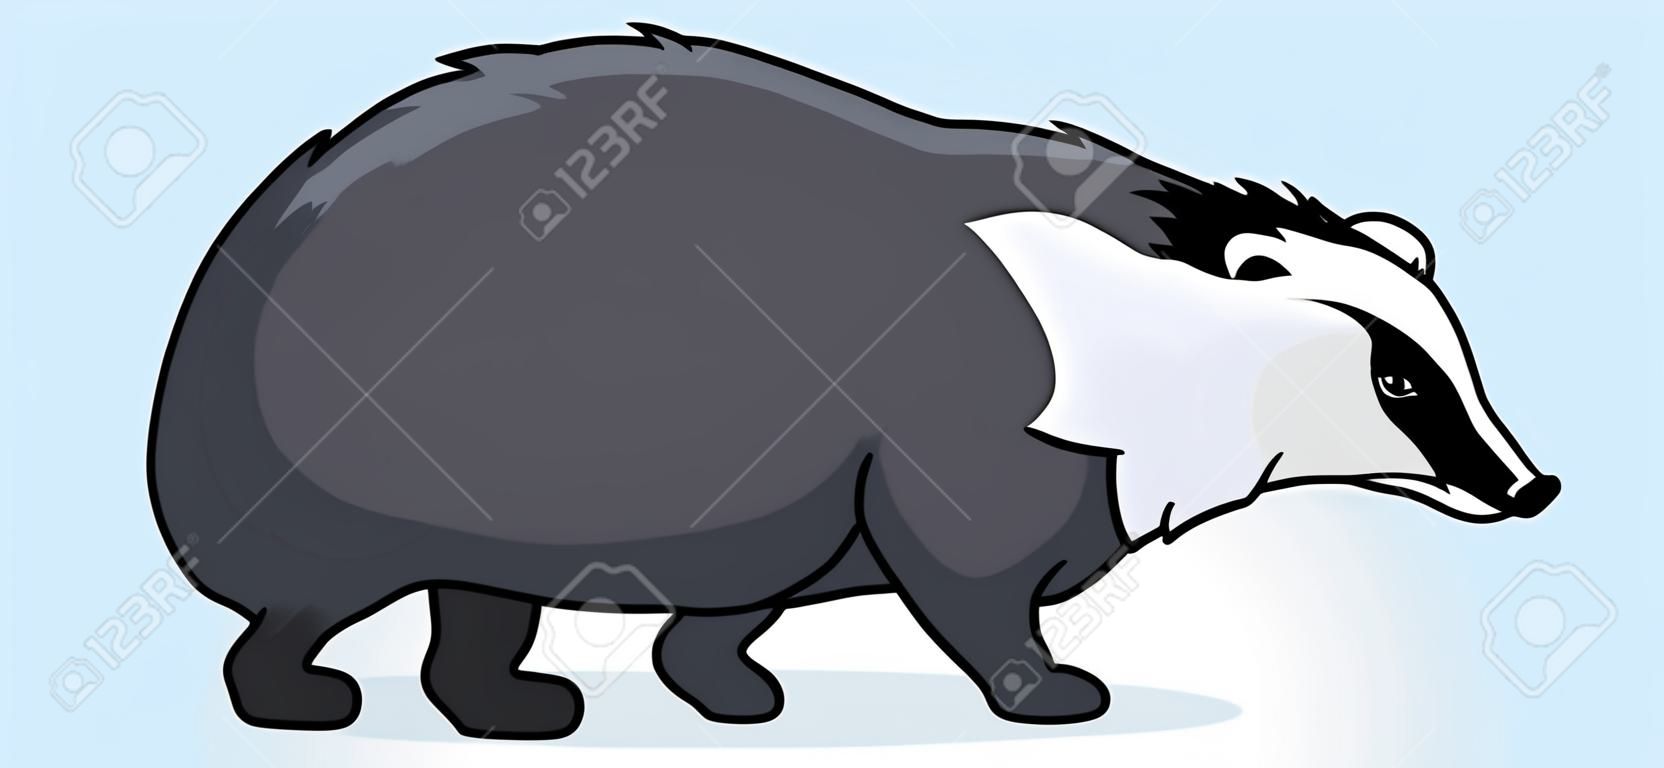 Ilustracja kreskówkowa przedstawiająca chodzącego borsuka